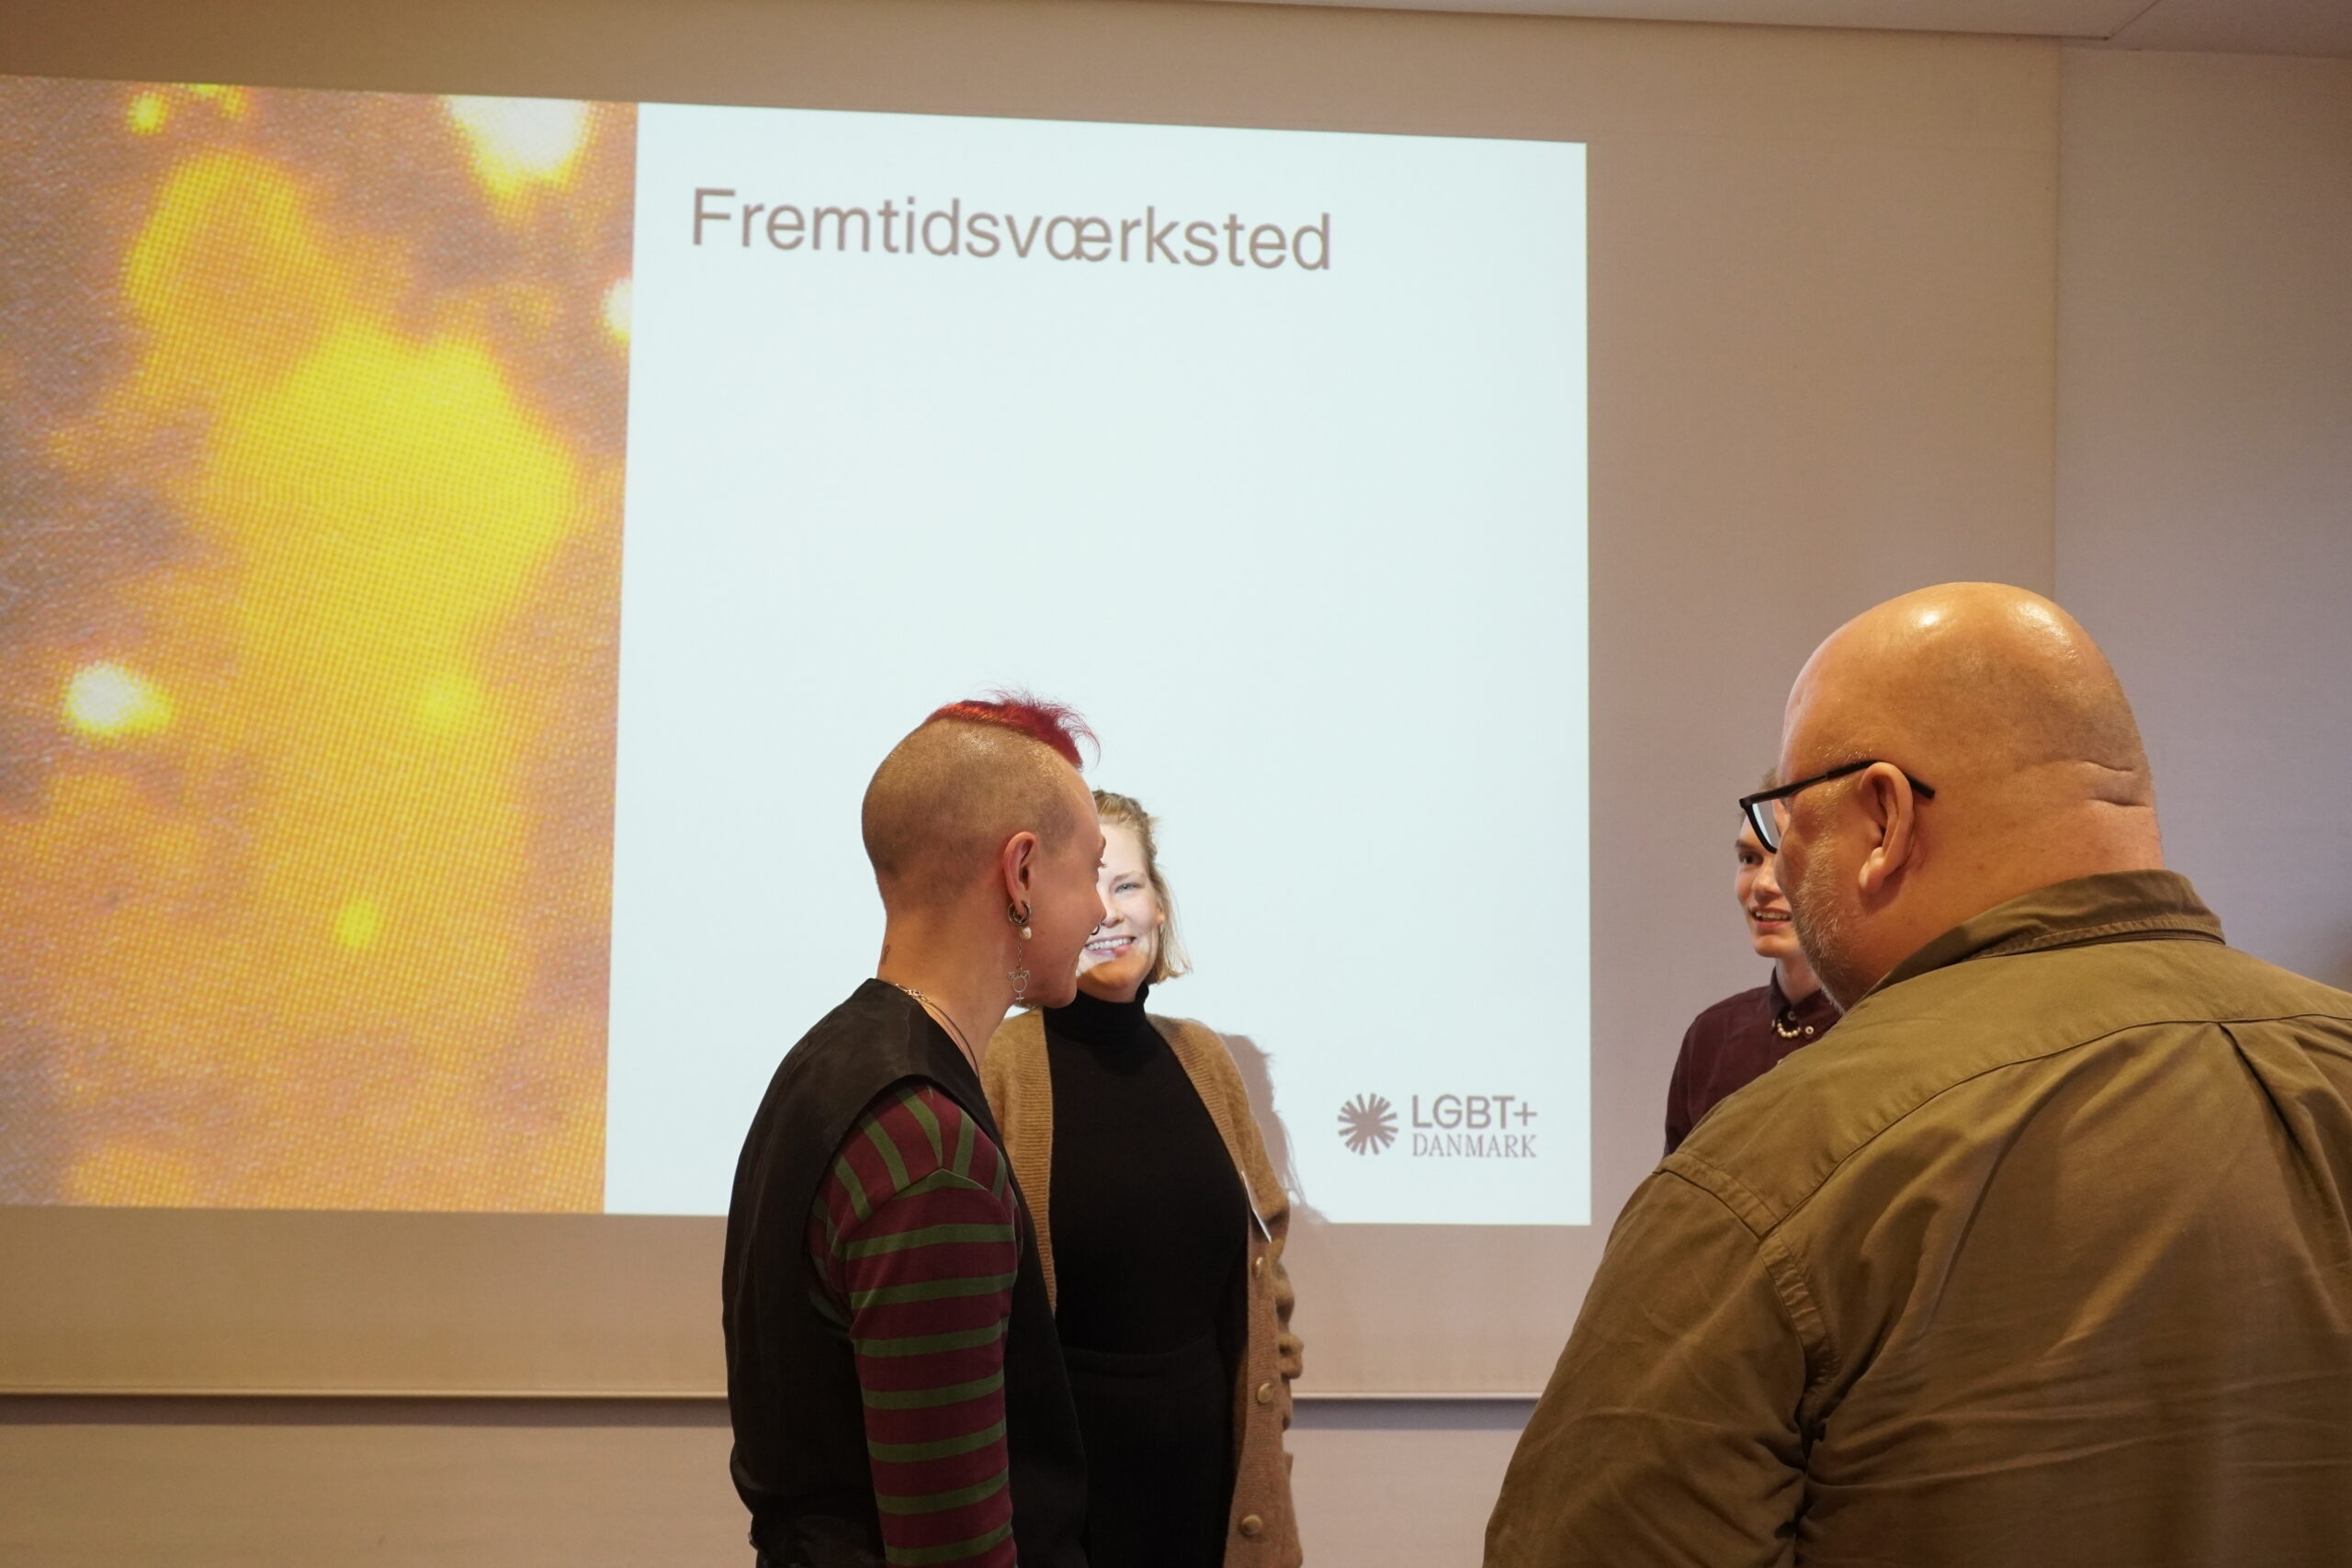 Deltagere til LGBT+ Danmarks årskonference taler sammen foran et slideshow med teksten "Fremtidsworkshop" på